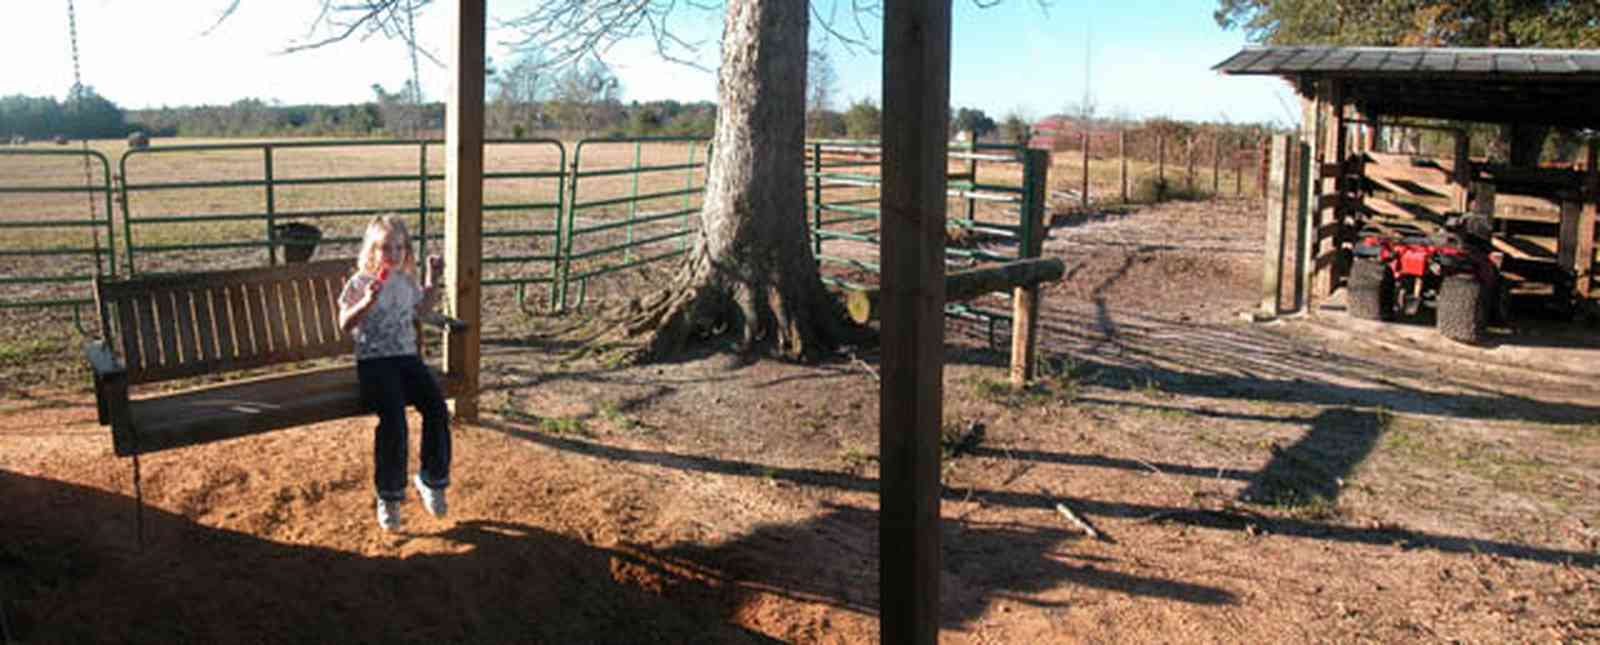 Century:-Brown-Farm_11.jpg:  swing, barn, 4-wheeler, hay field, dirt, oak tree, fence